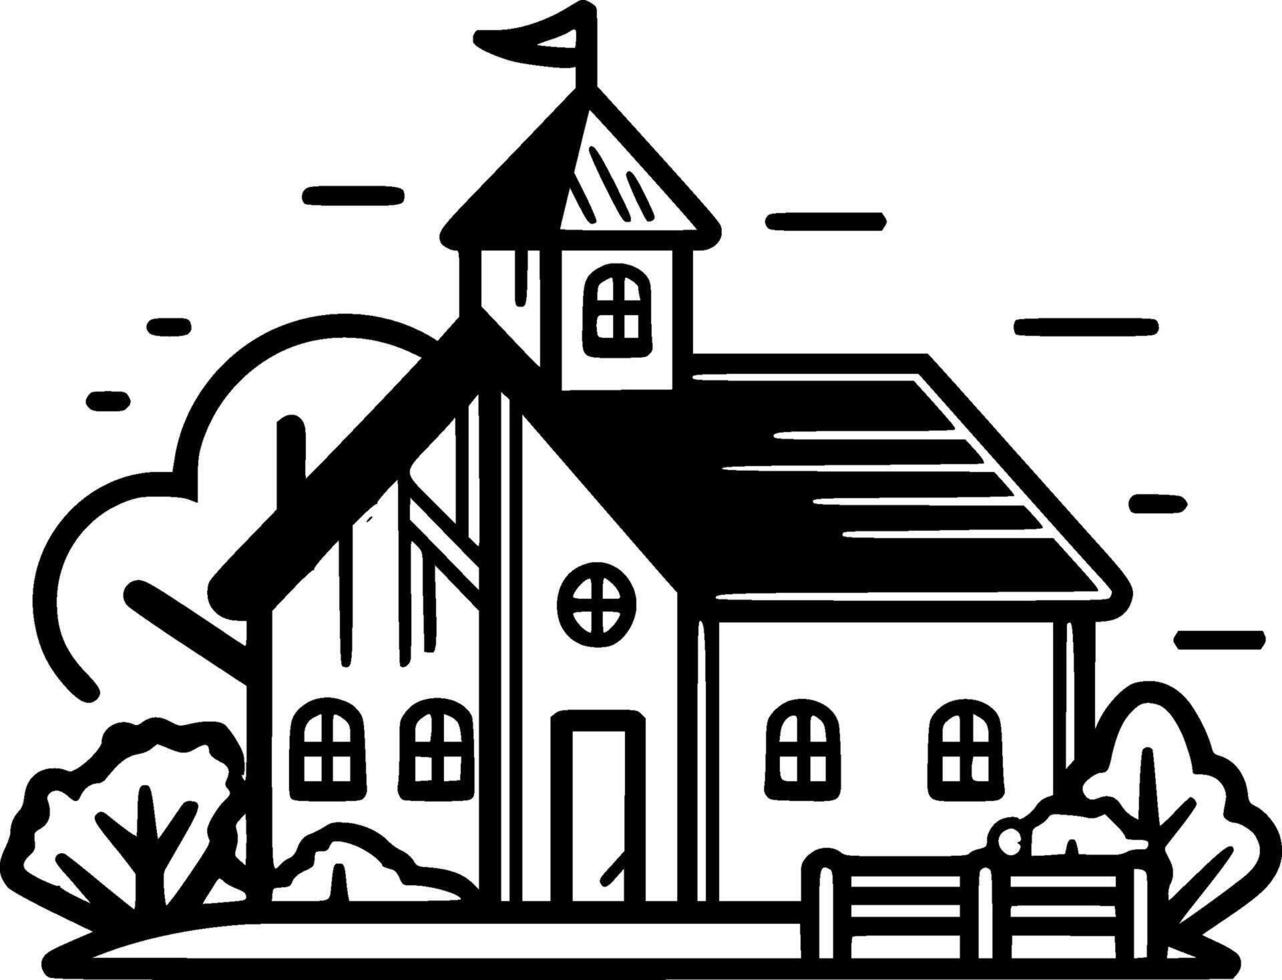 bondgård - svart och vit isolerat ikon - vektor illustration